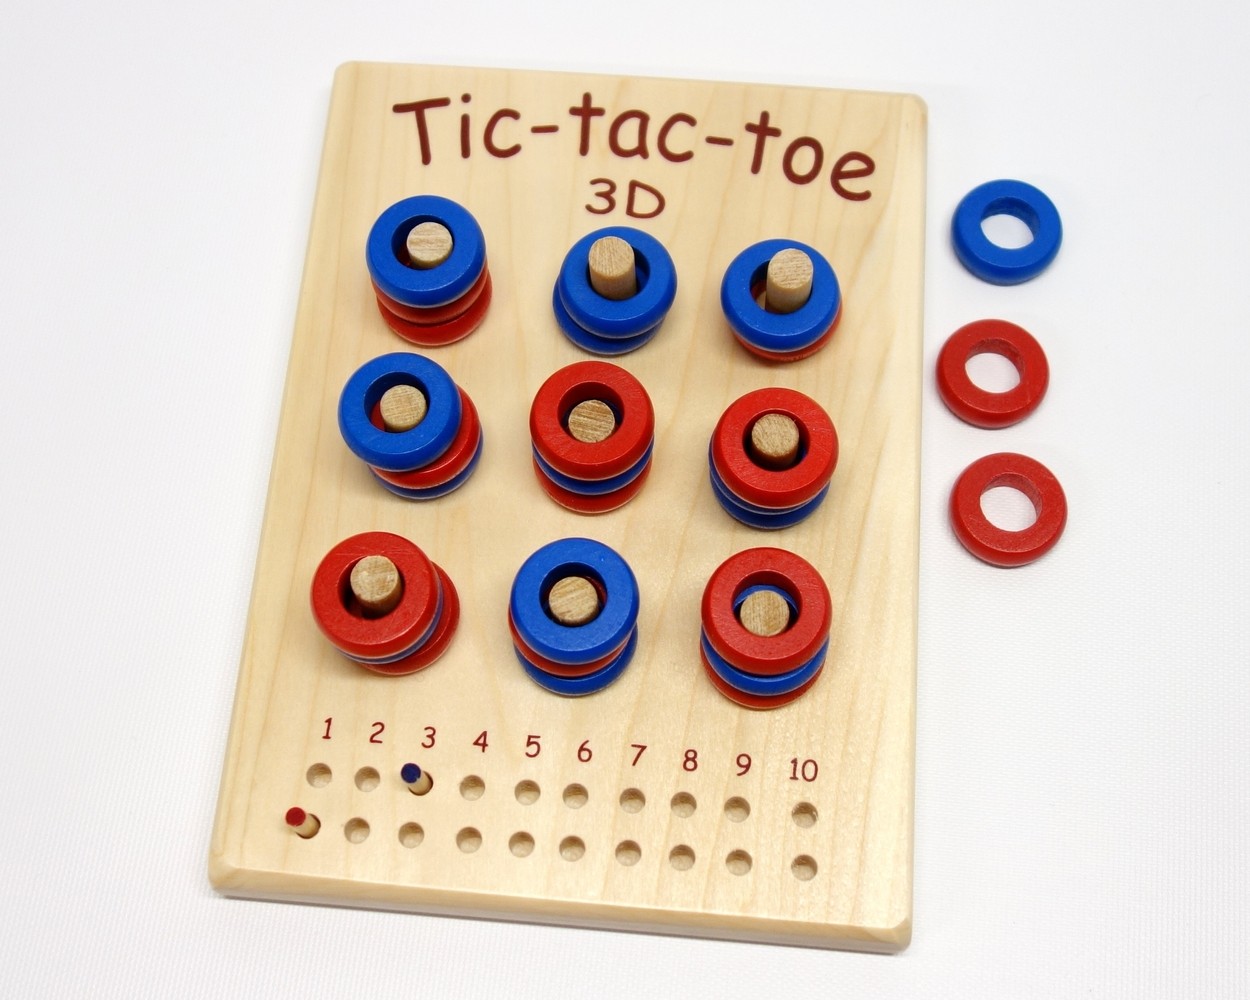 Le Tic-tac-toe 3D